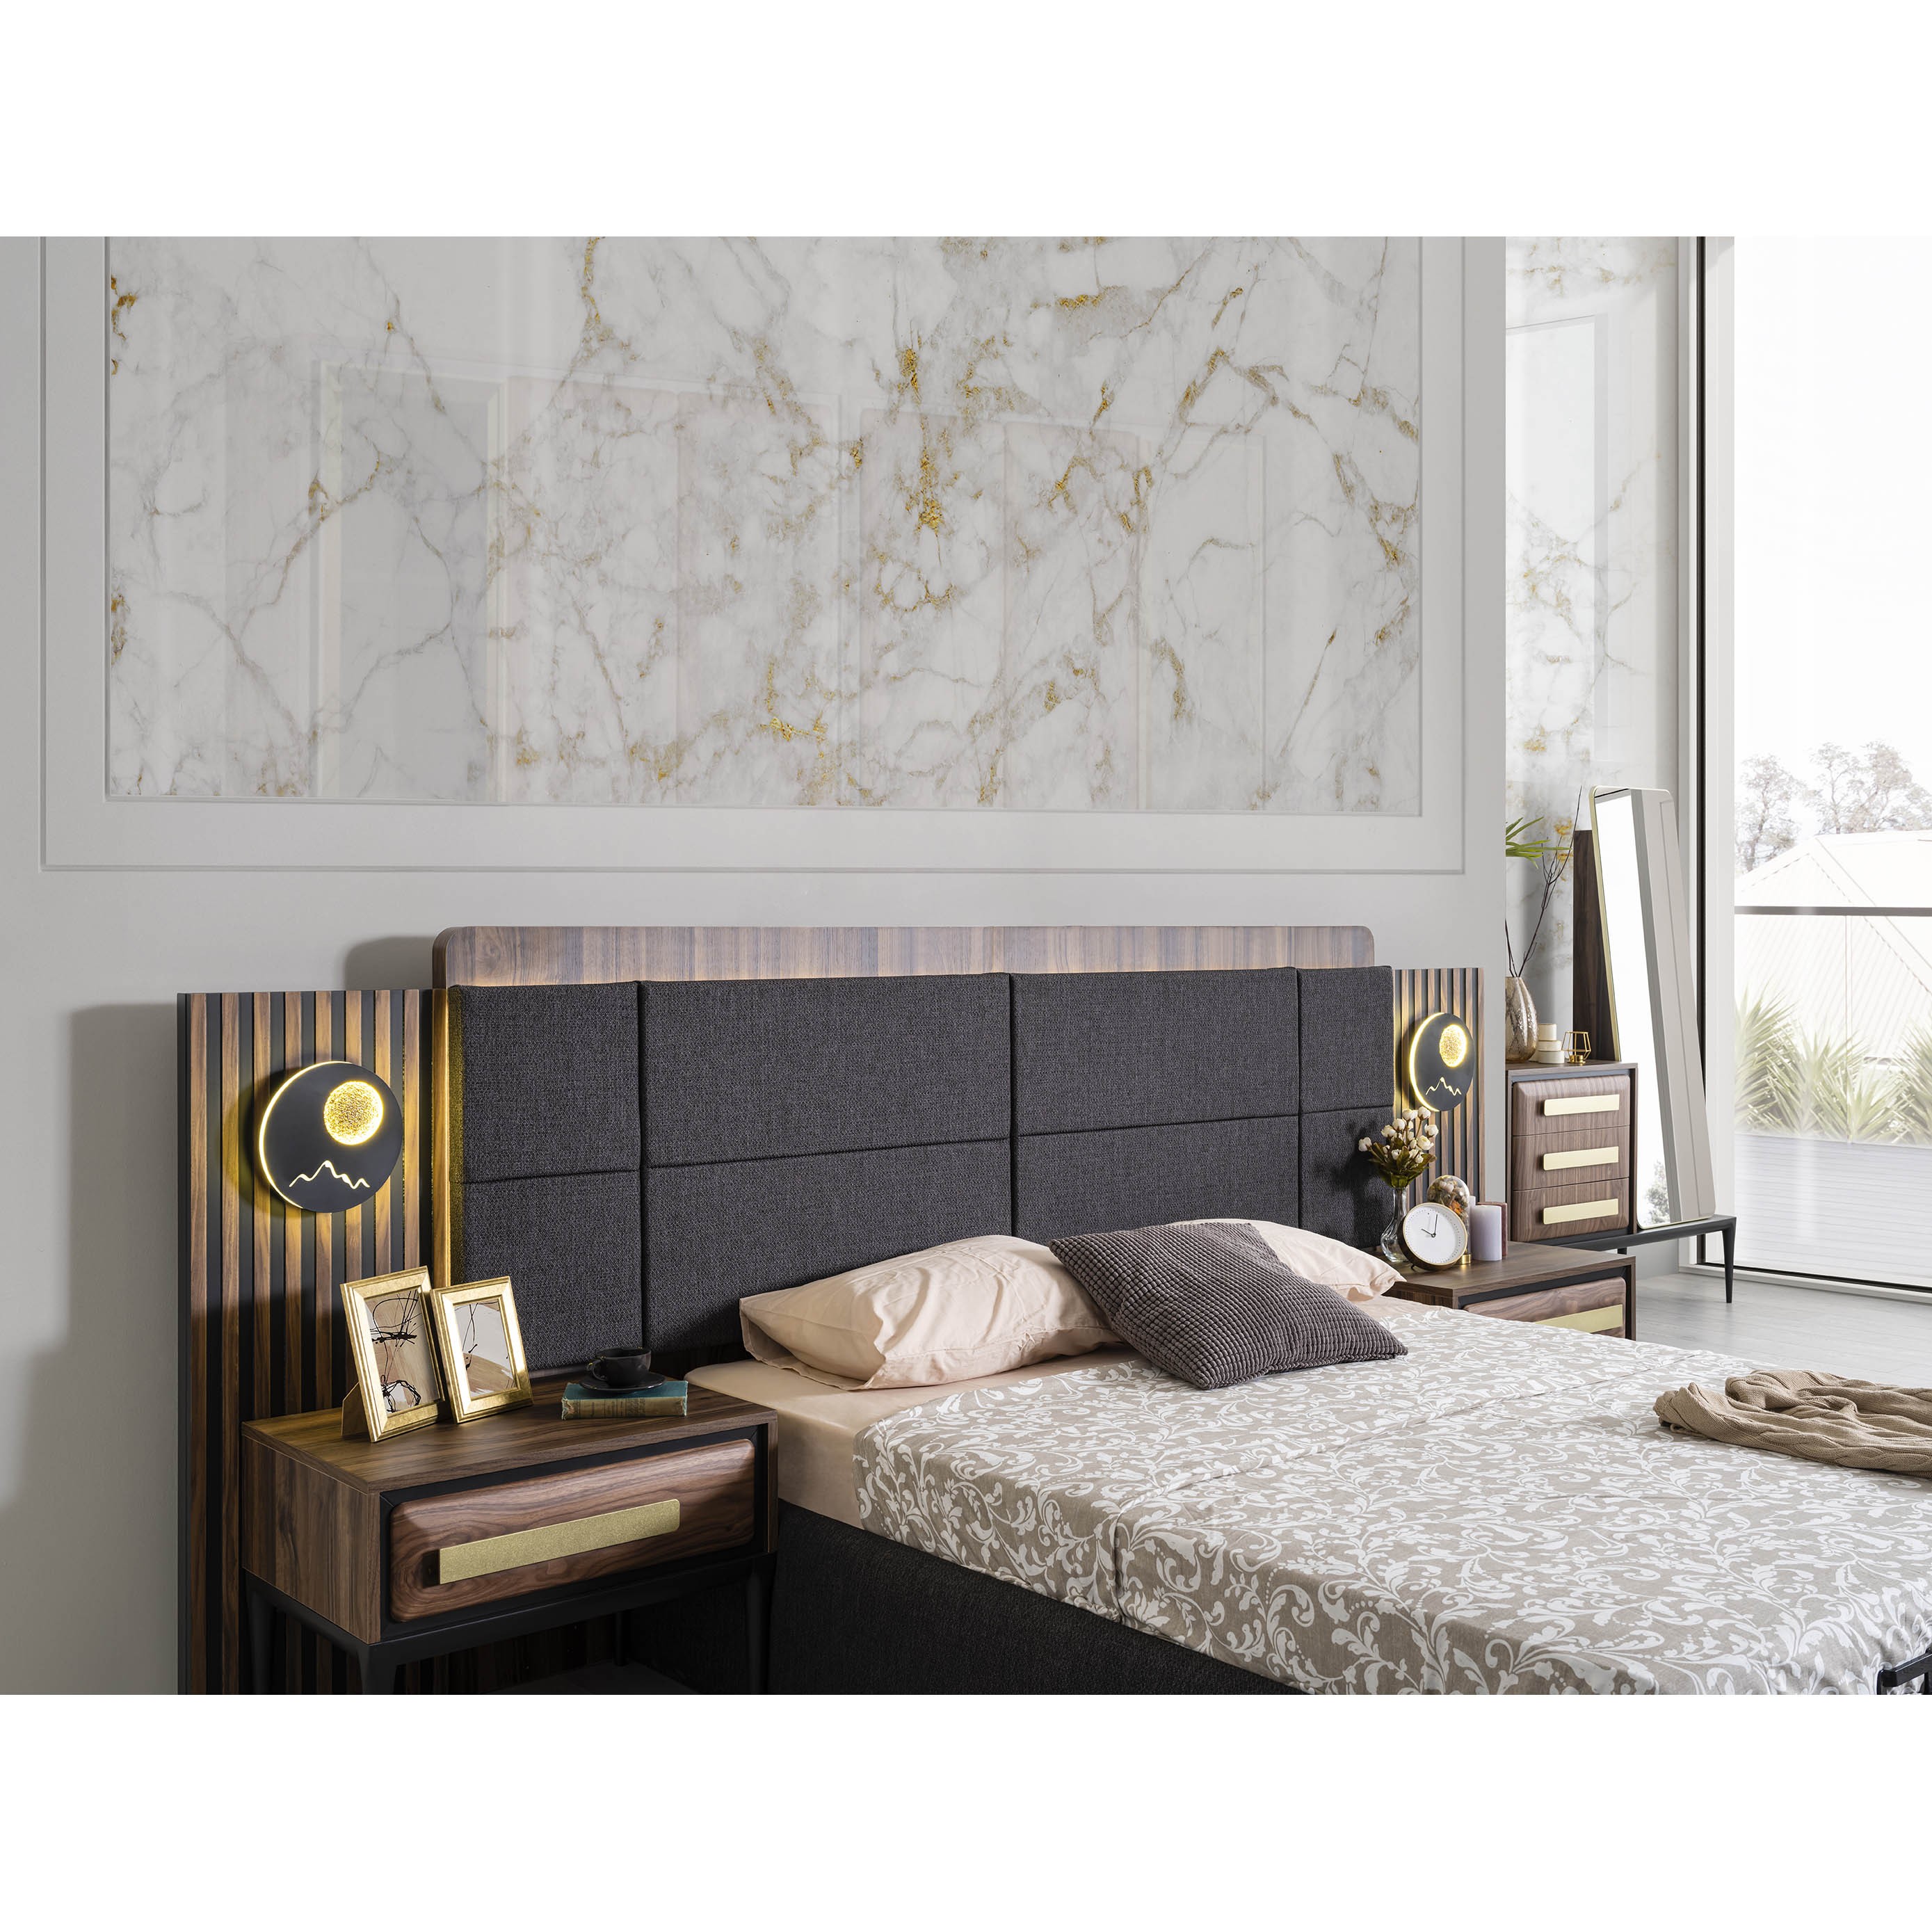 Armani Bed With Storage 160x200 cm